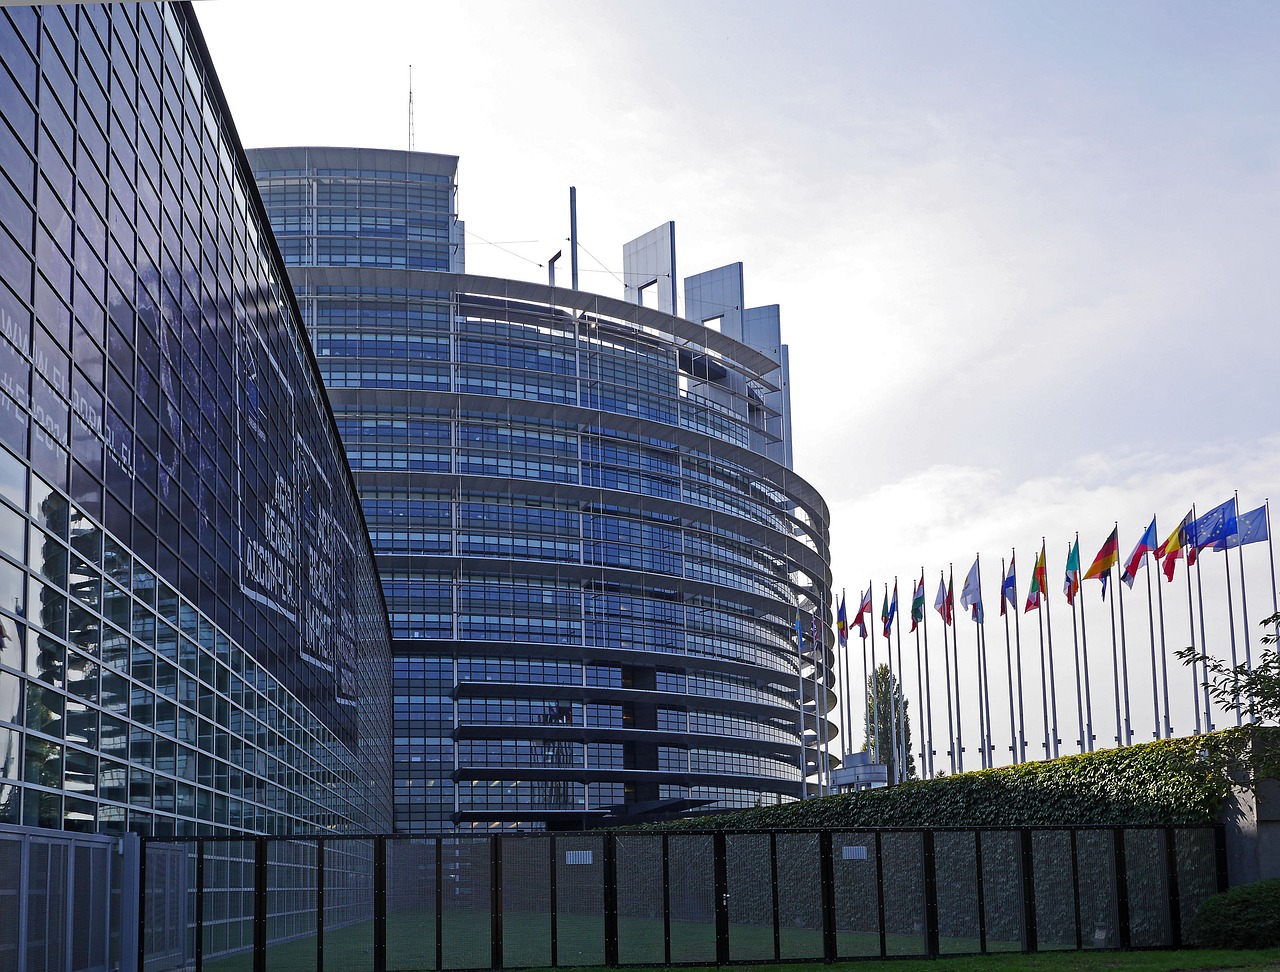 پارلمان اروپا رای گیری در مورد مقررات کریپتو را برای مدت نامعلومی به تعویق انداخت